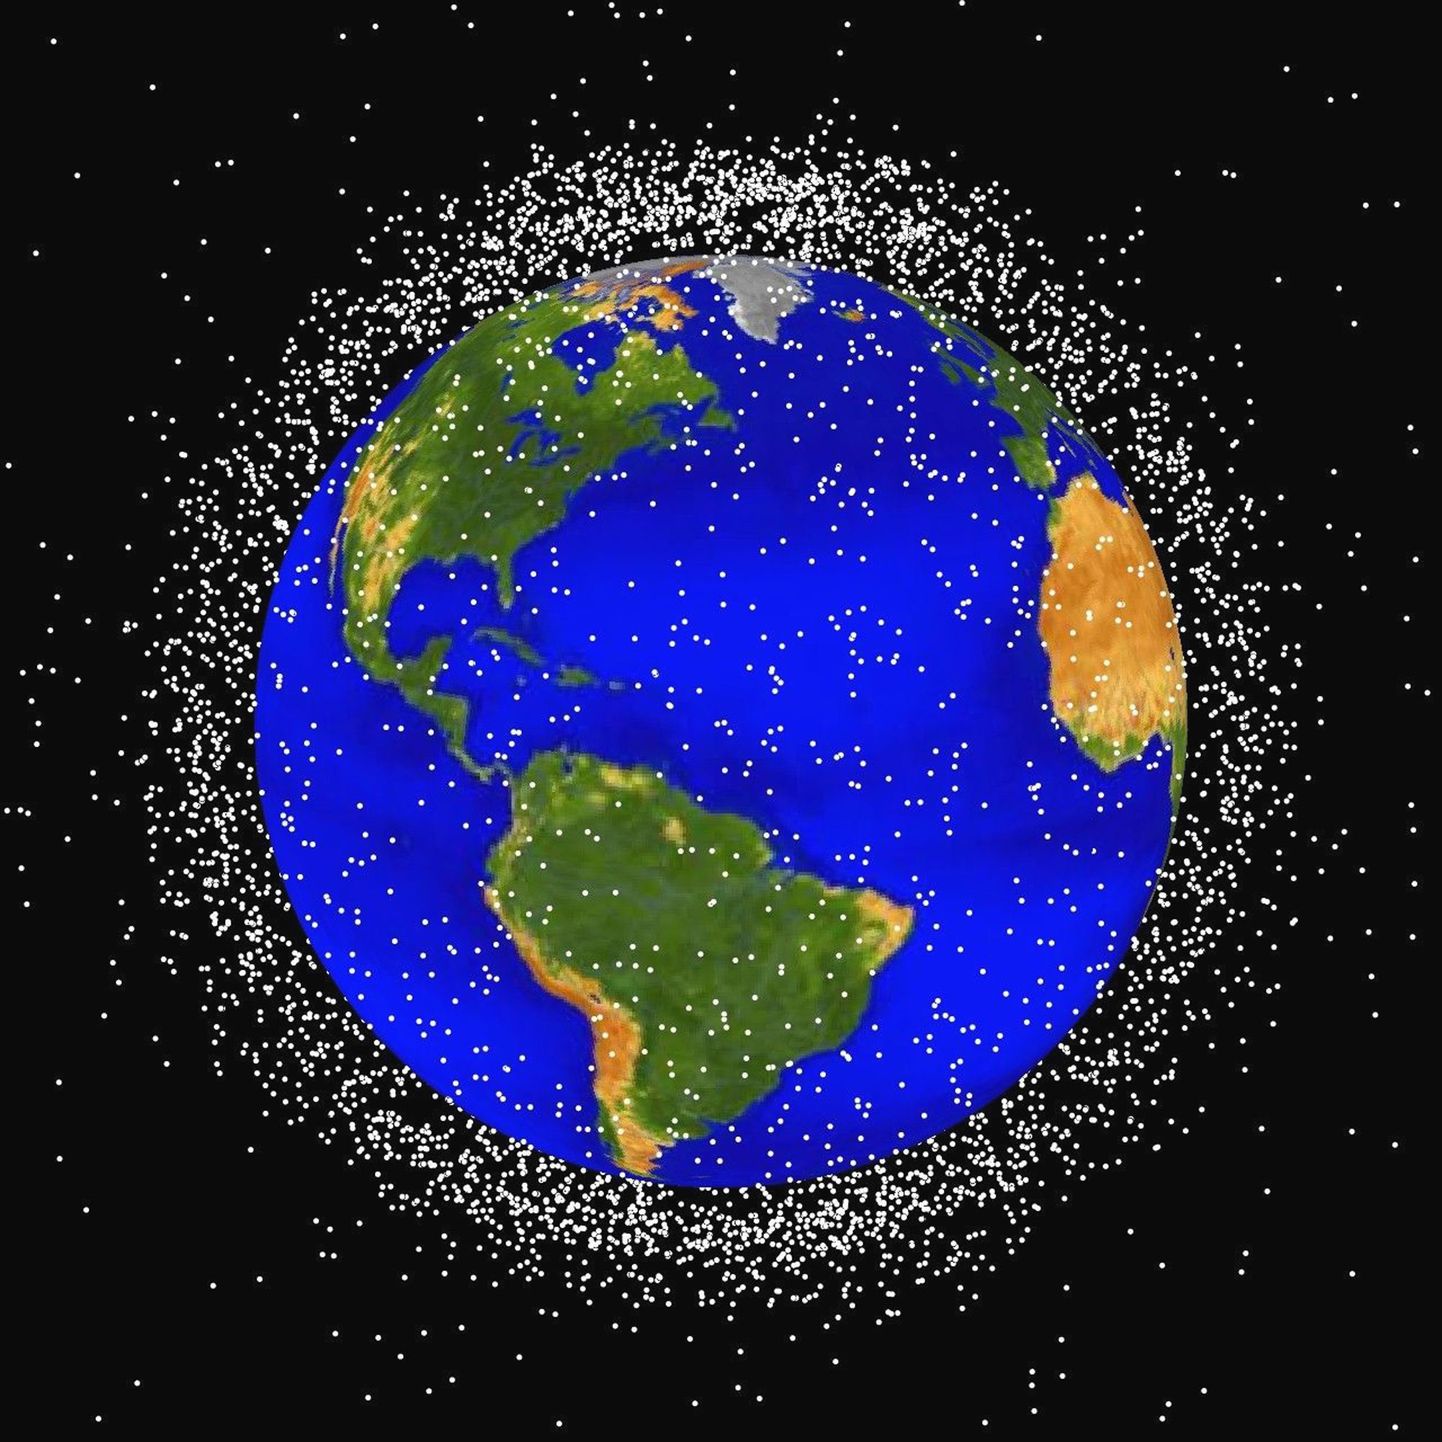 Ühendriikide kosmoseagentuuri NASA nägemus Maad ümbritsevatest tehiskaaslastest.